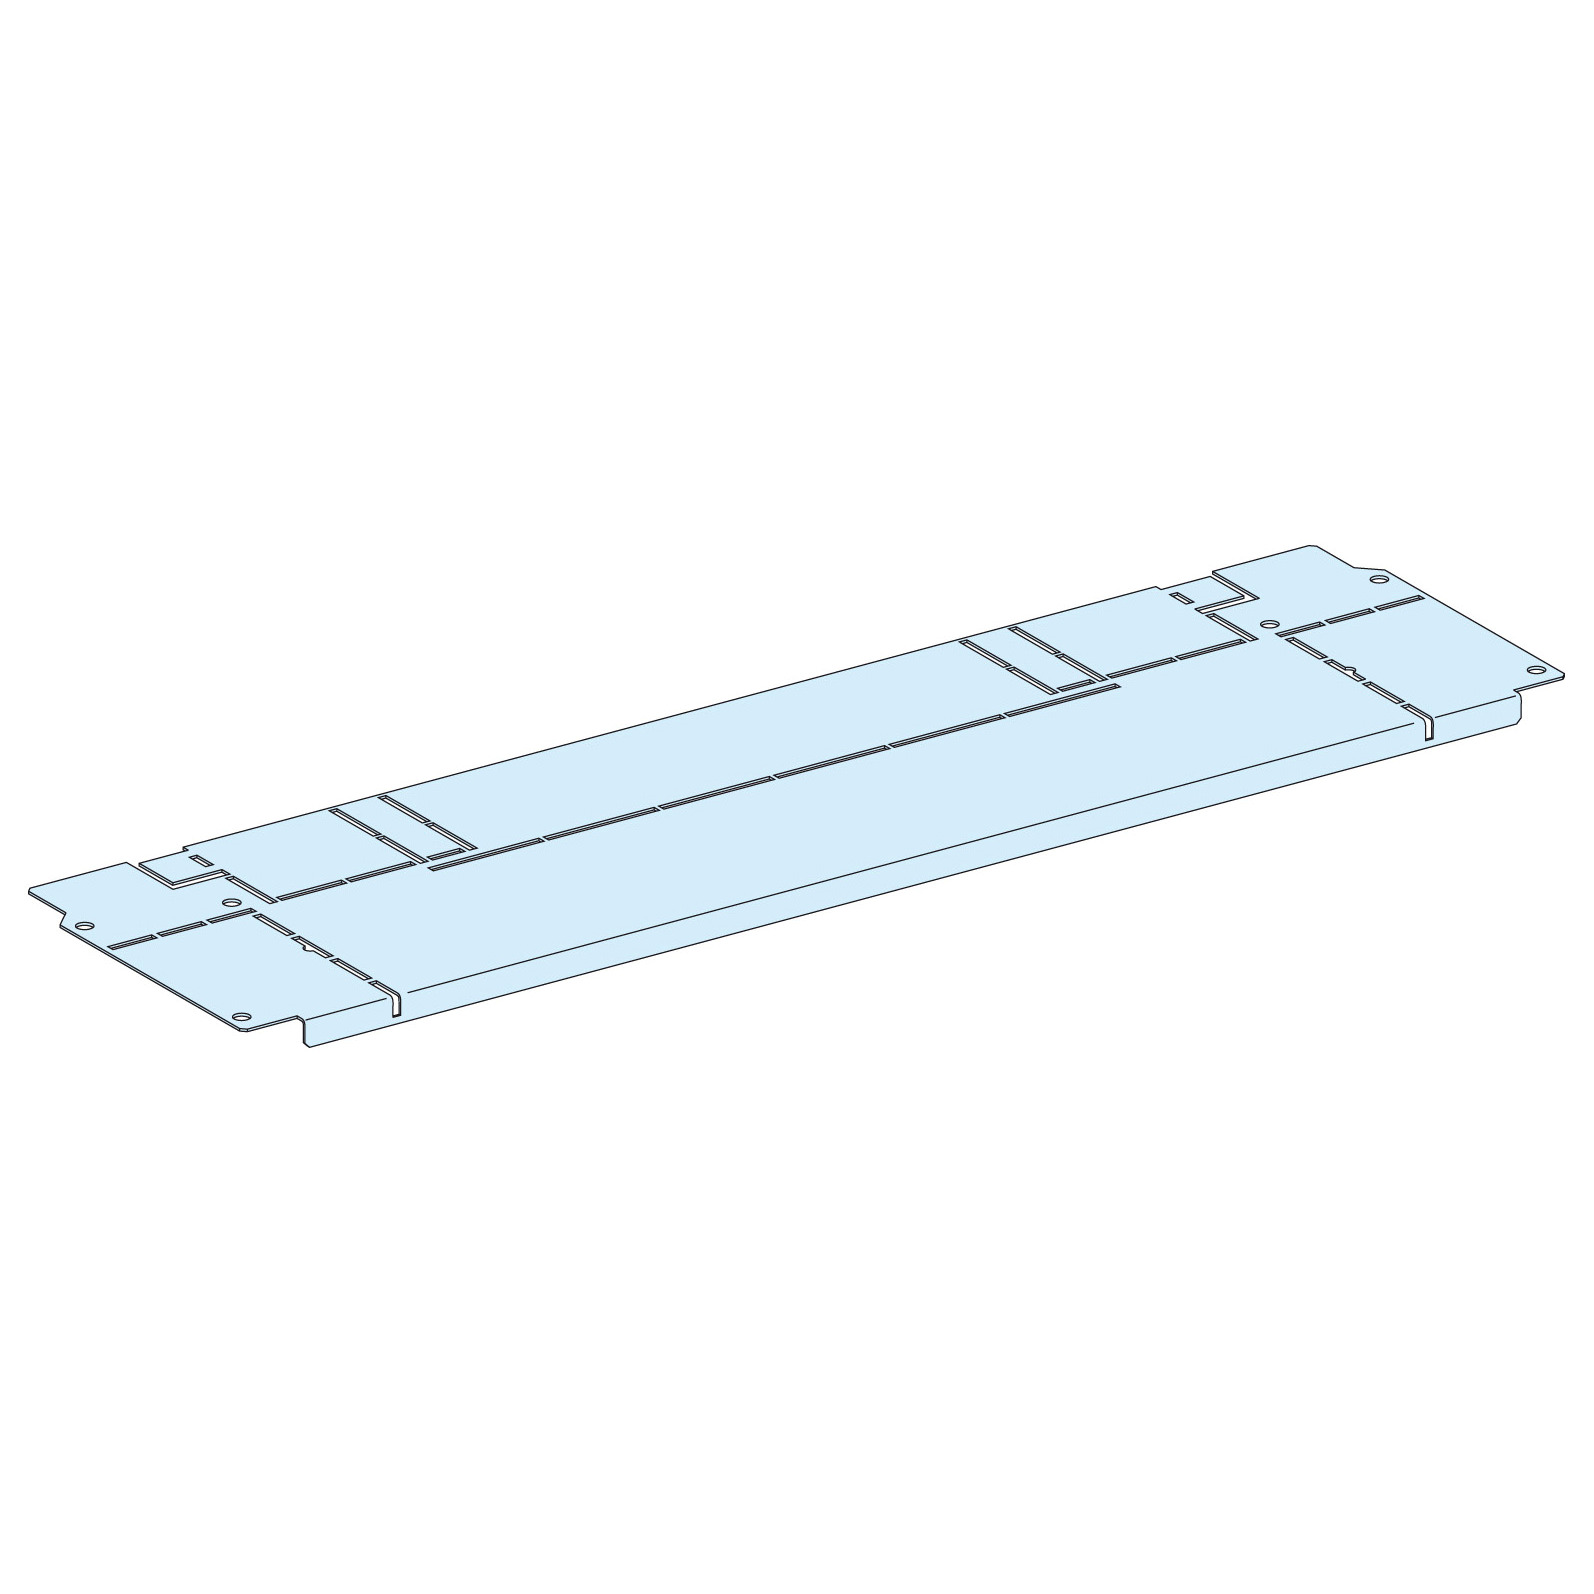 Prisma SeT G: metalna barijera za horizontalno razdvajanje, W=850mm